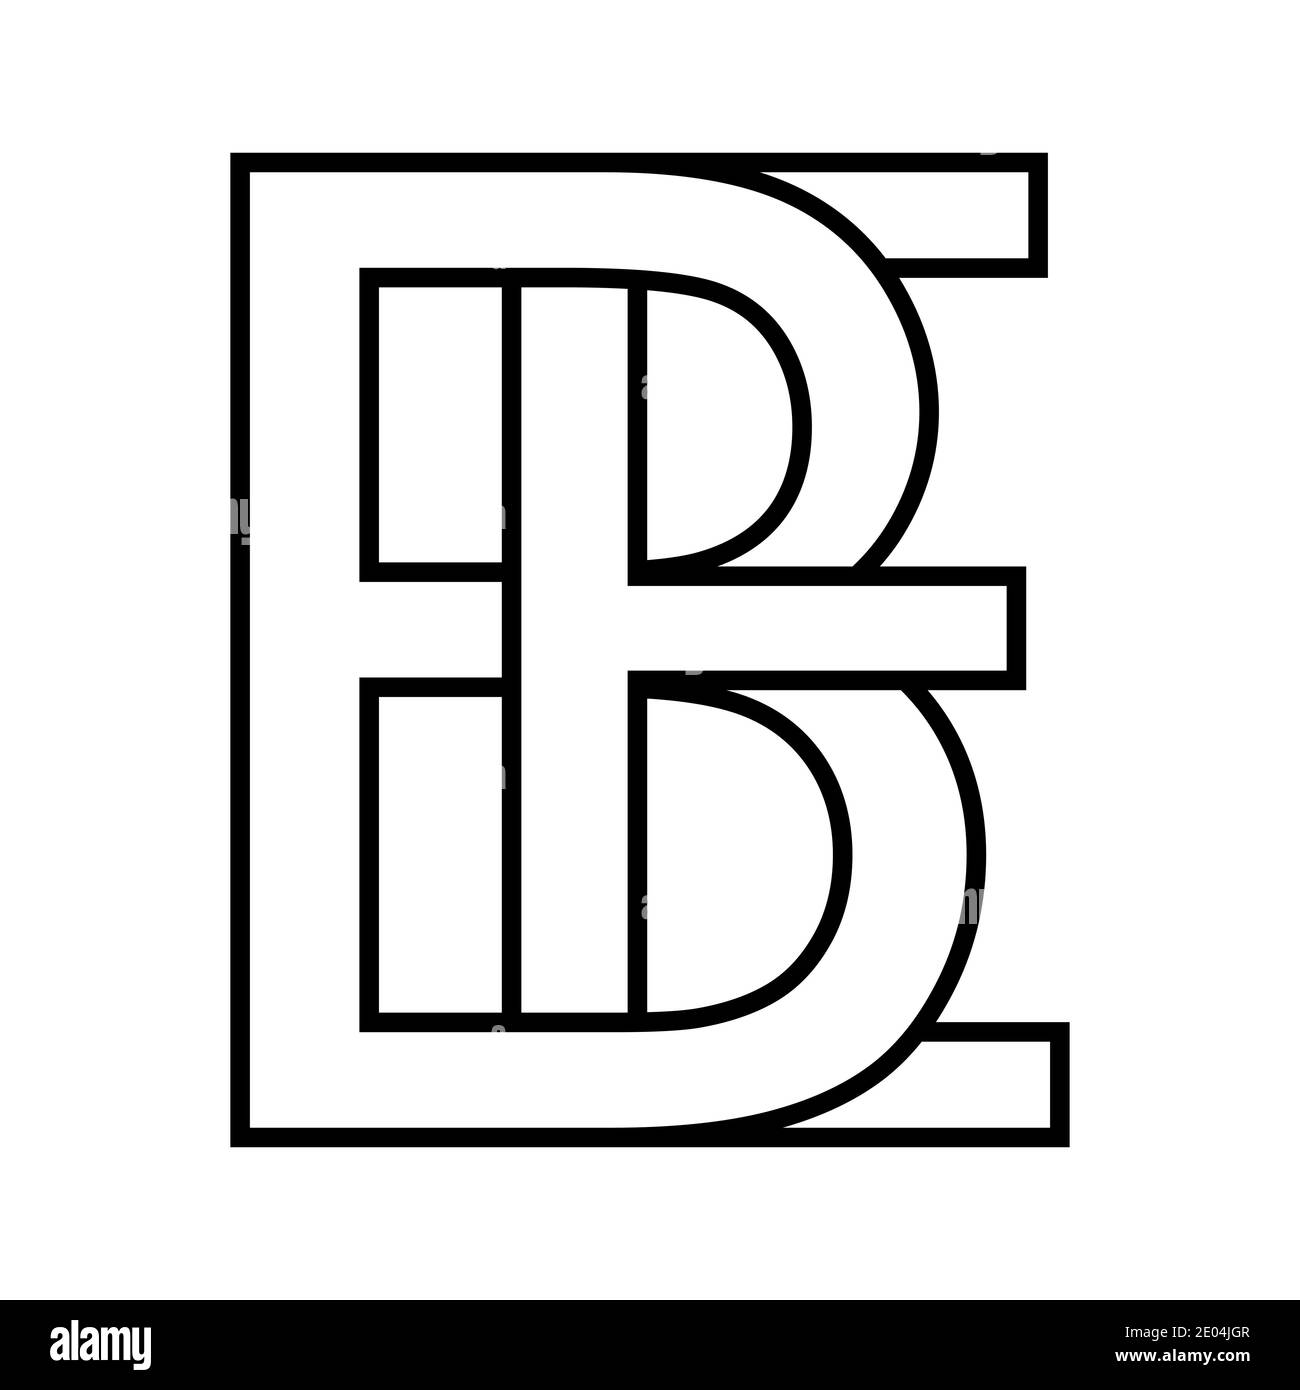 Logo BE, simbolo eb lettere interlacciate b, e logo vettoriale BE, eb primo carattere maiuscolo alfabeto b, e Illustrazione Vettoriale